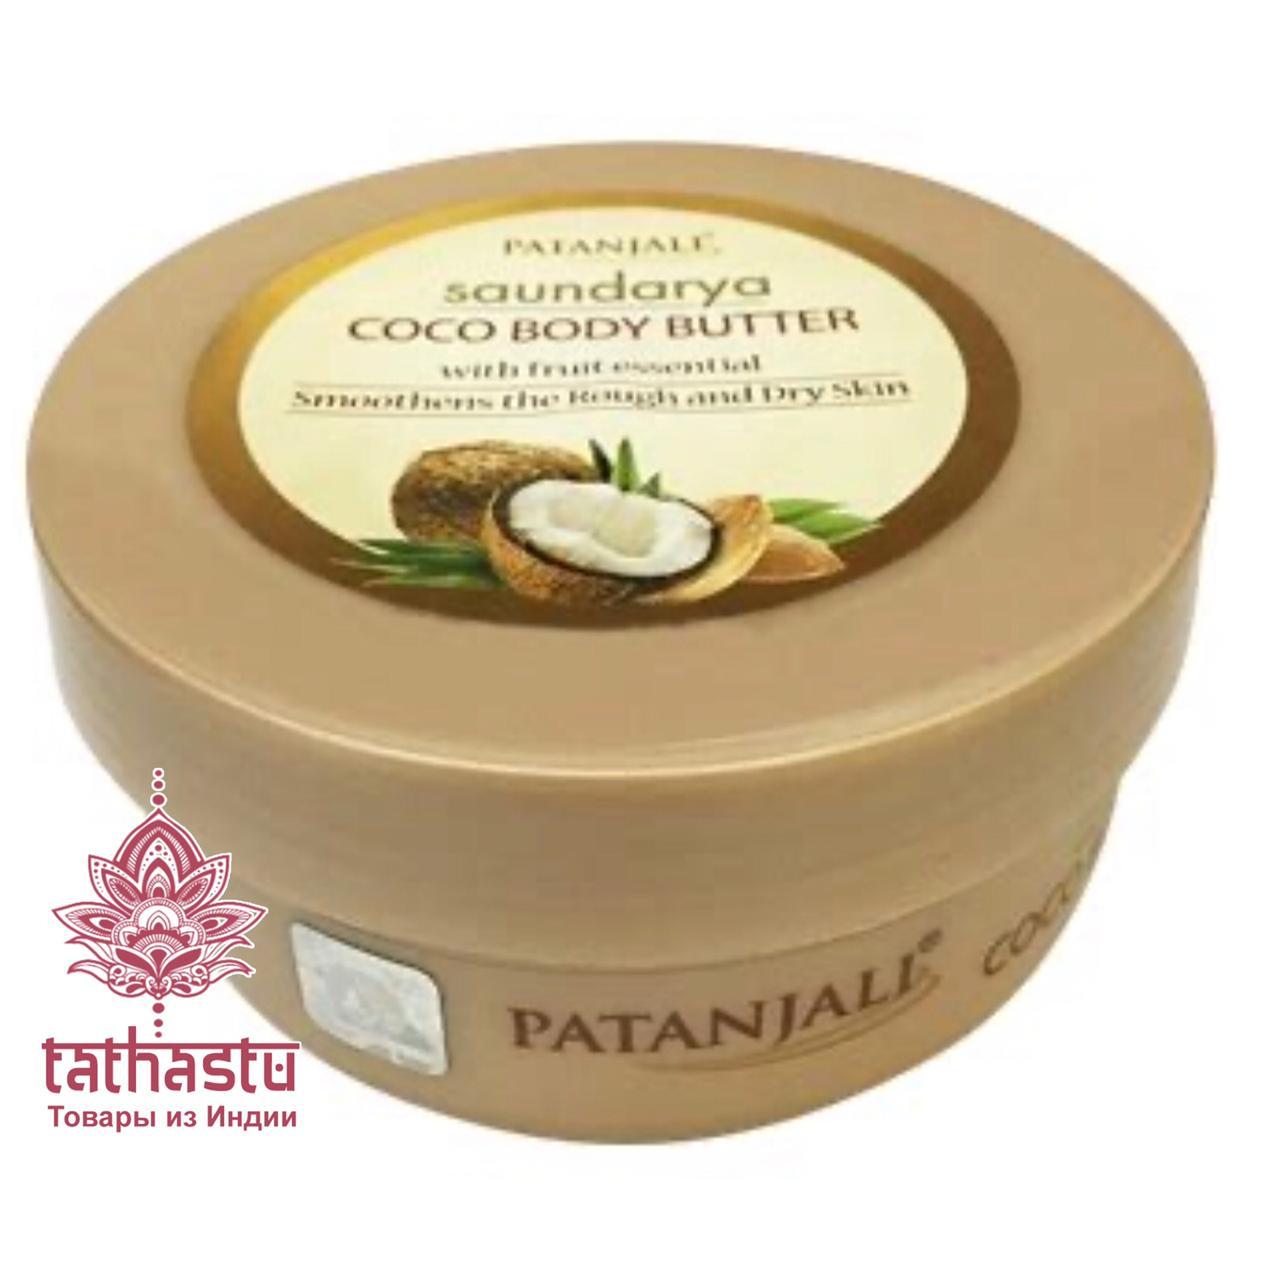 Patanjali кокосовое крем-масло для тела. Tathastu товары и индии